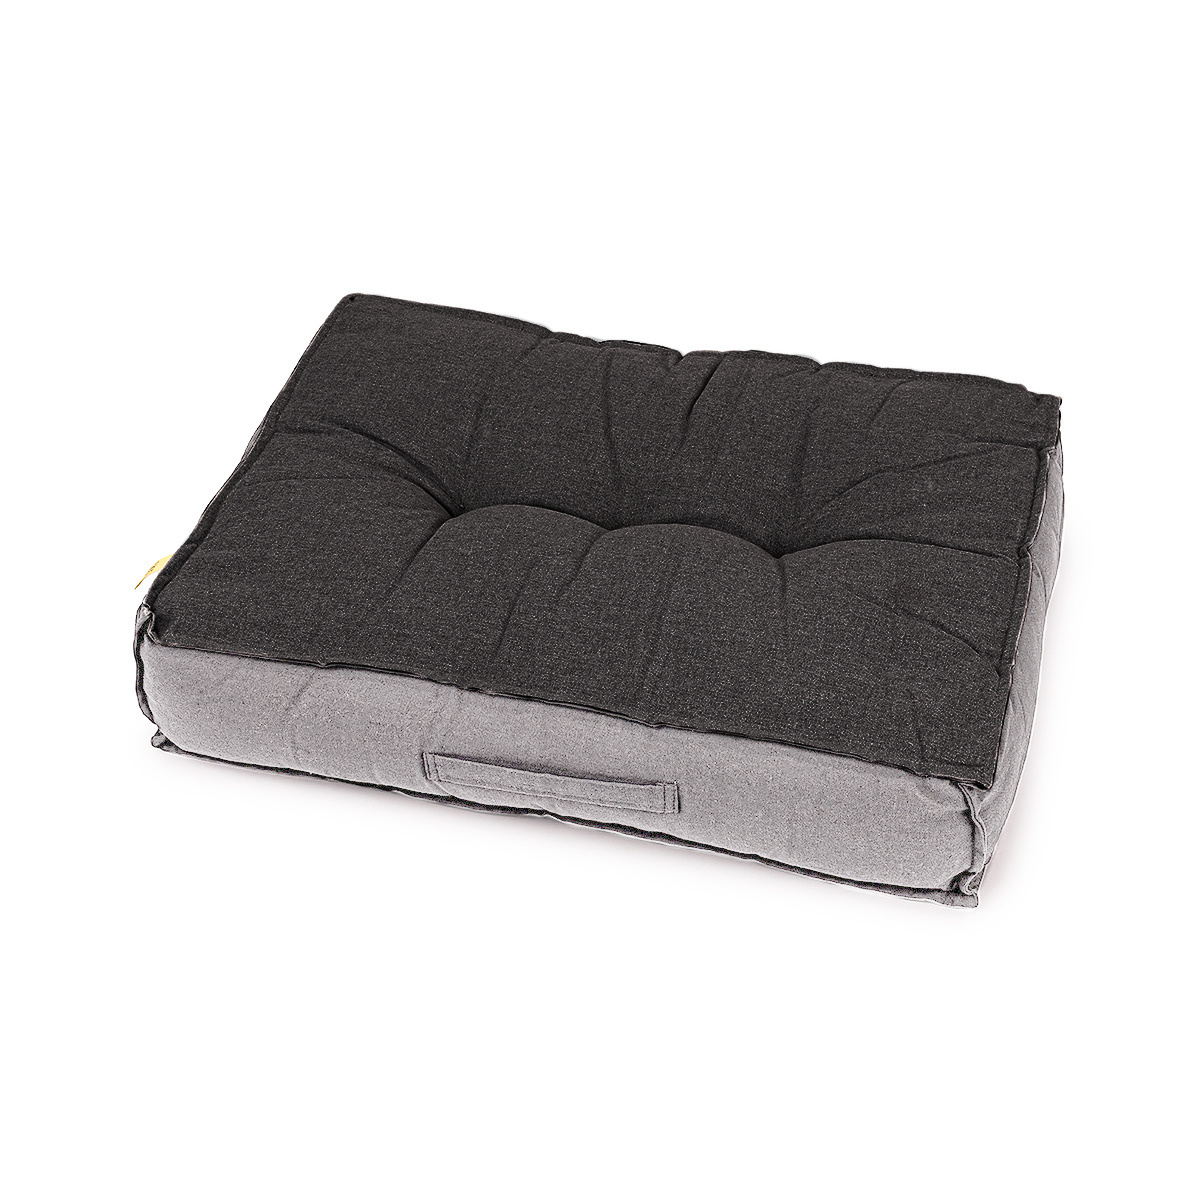 Trade Concept Sedák Relax na palety/pro venkovní použití tmavě šedá,  60 x 45 cm